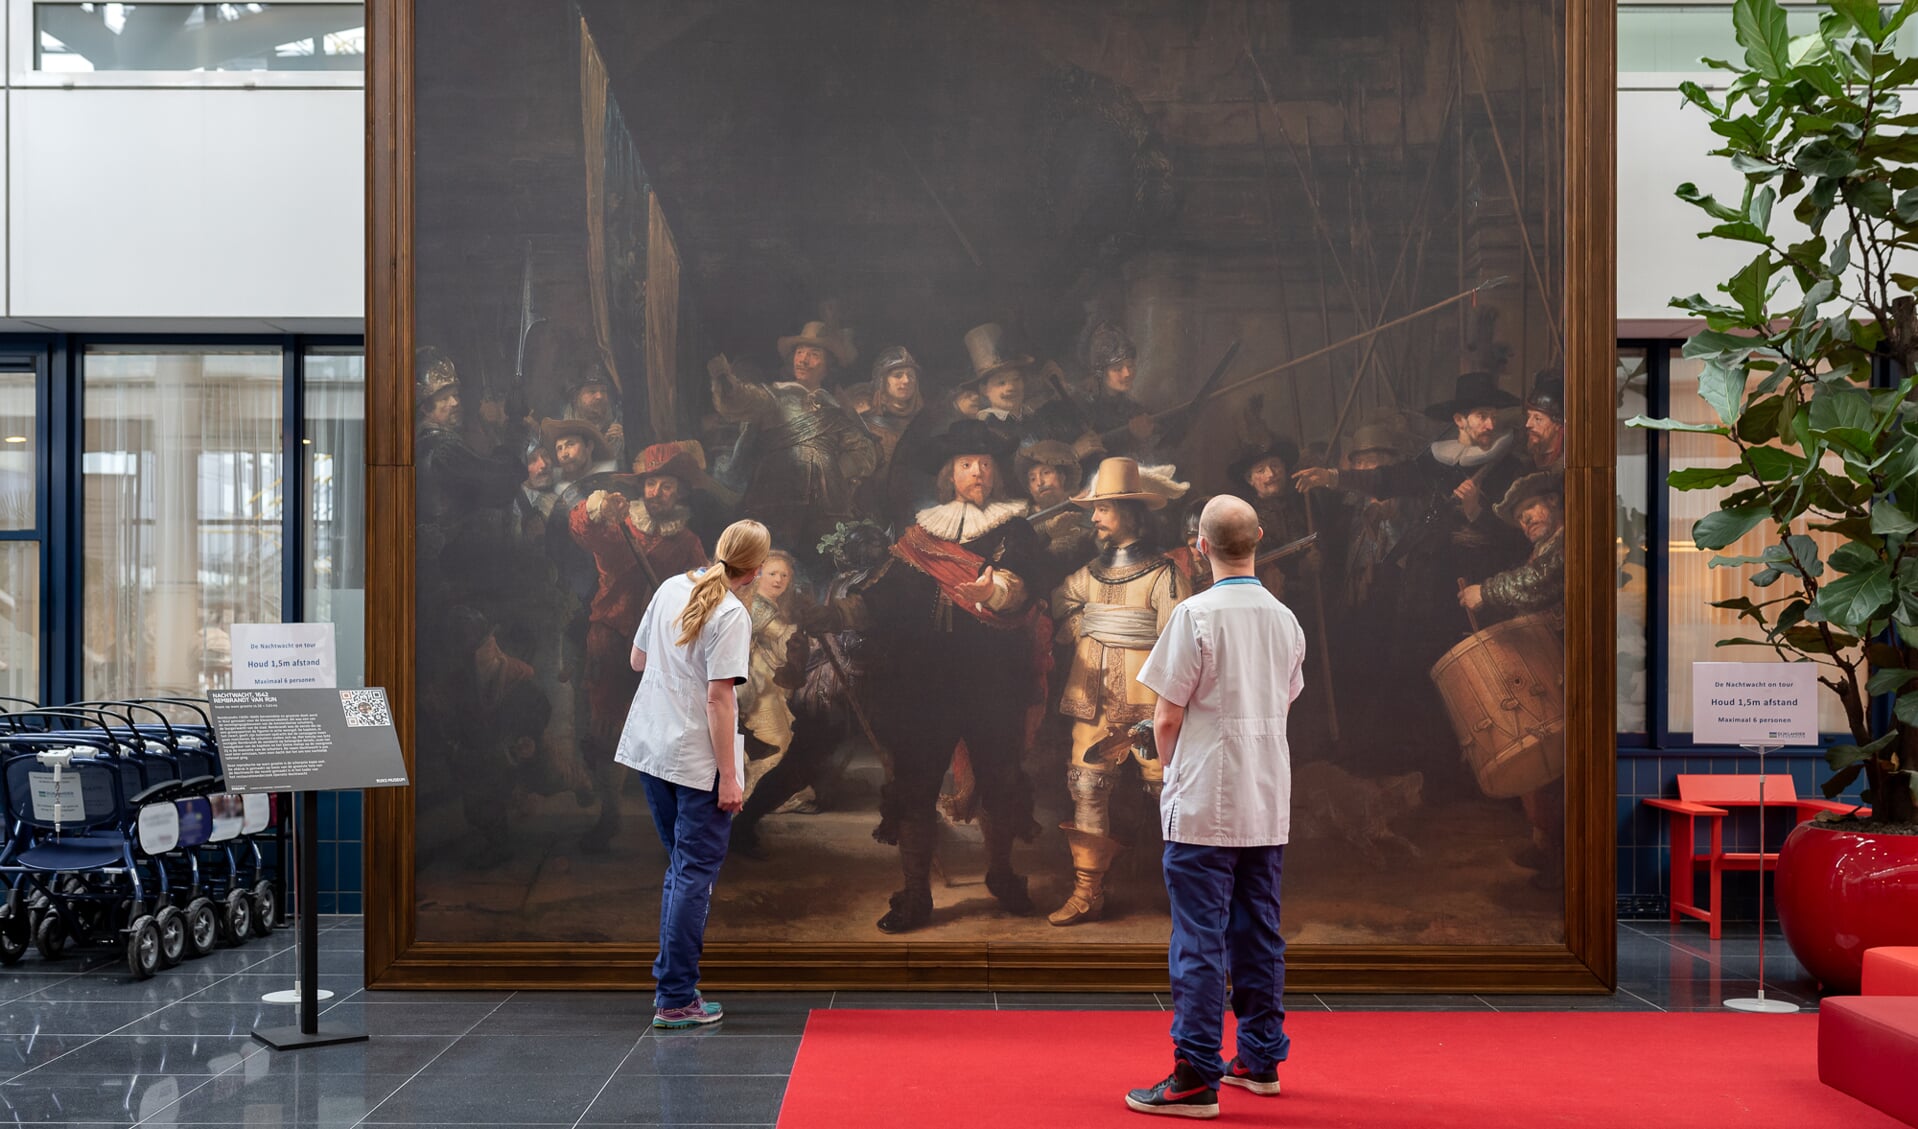 De replica is net zo groot als de echte versie in het Rijksmuseum, vier bij vijf meter. 